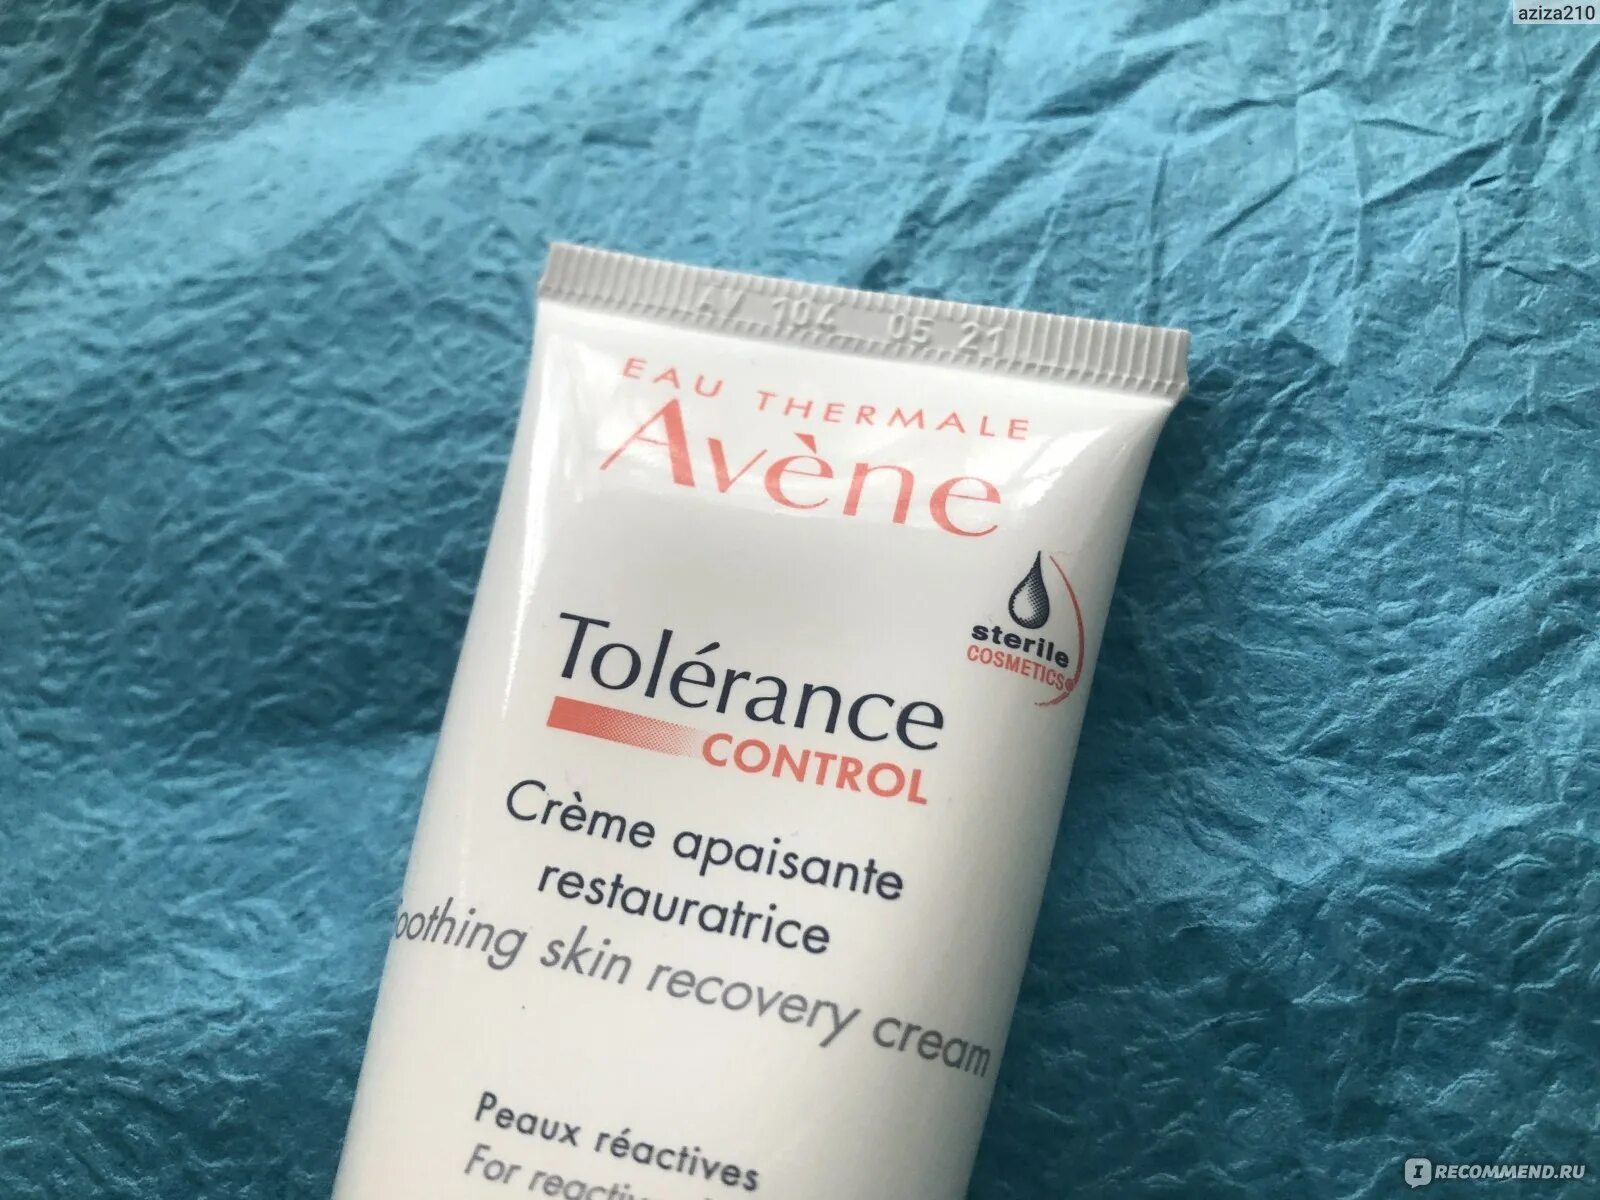 Avene tolerance control. Авен (Avene) tolerance Control крем успокаивающий восстанавливающий 40 мл. Авен крем для глаз для очень чувствительной кожи. Акнестоп крем купить.